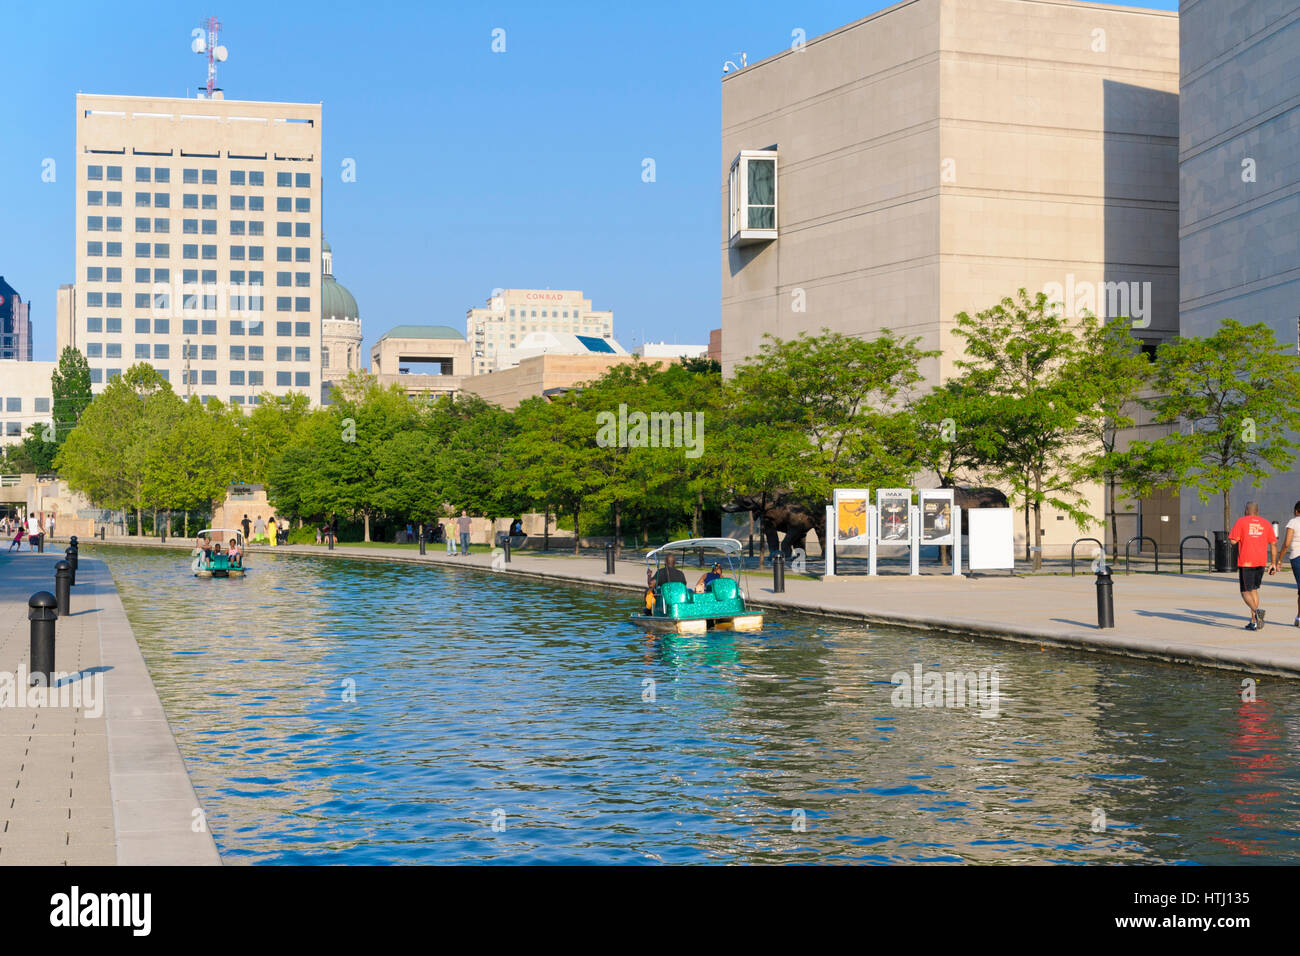 Les gens dans la découverte du quartier historique de canal central à Indianapolis, Indiana, USA Banque D'Images